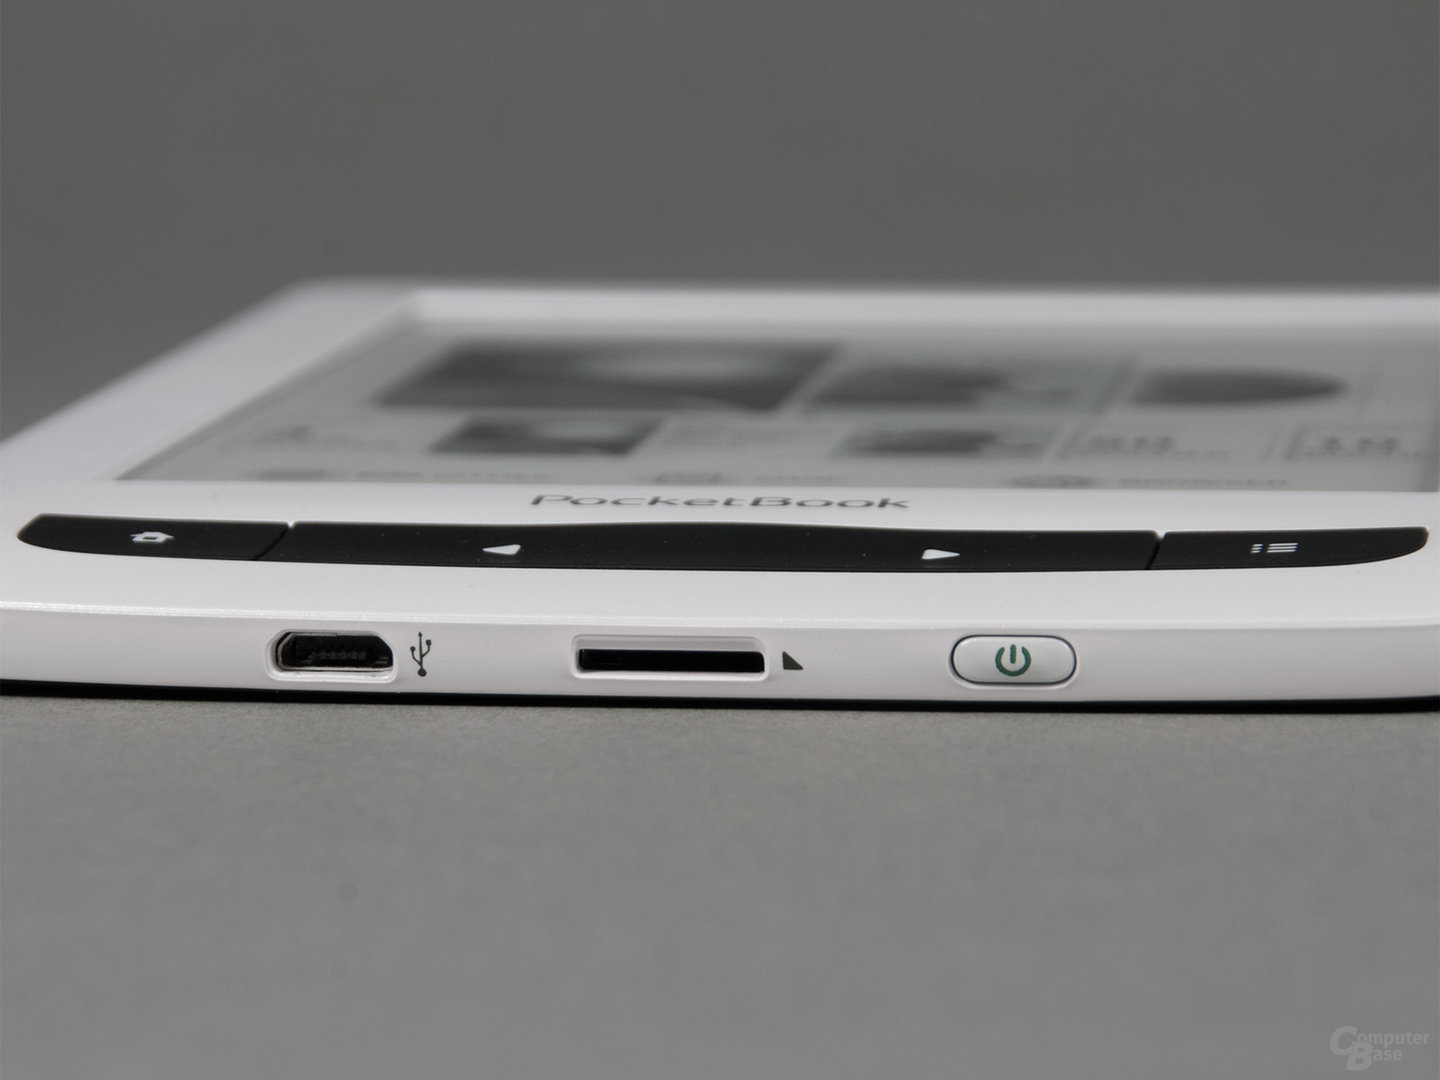 USB-Anschluss, SD-Kartenslot und Ein-/Ausschalter beim PocketBook Touch Lux 3